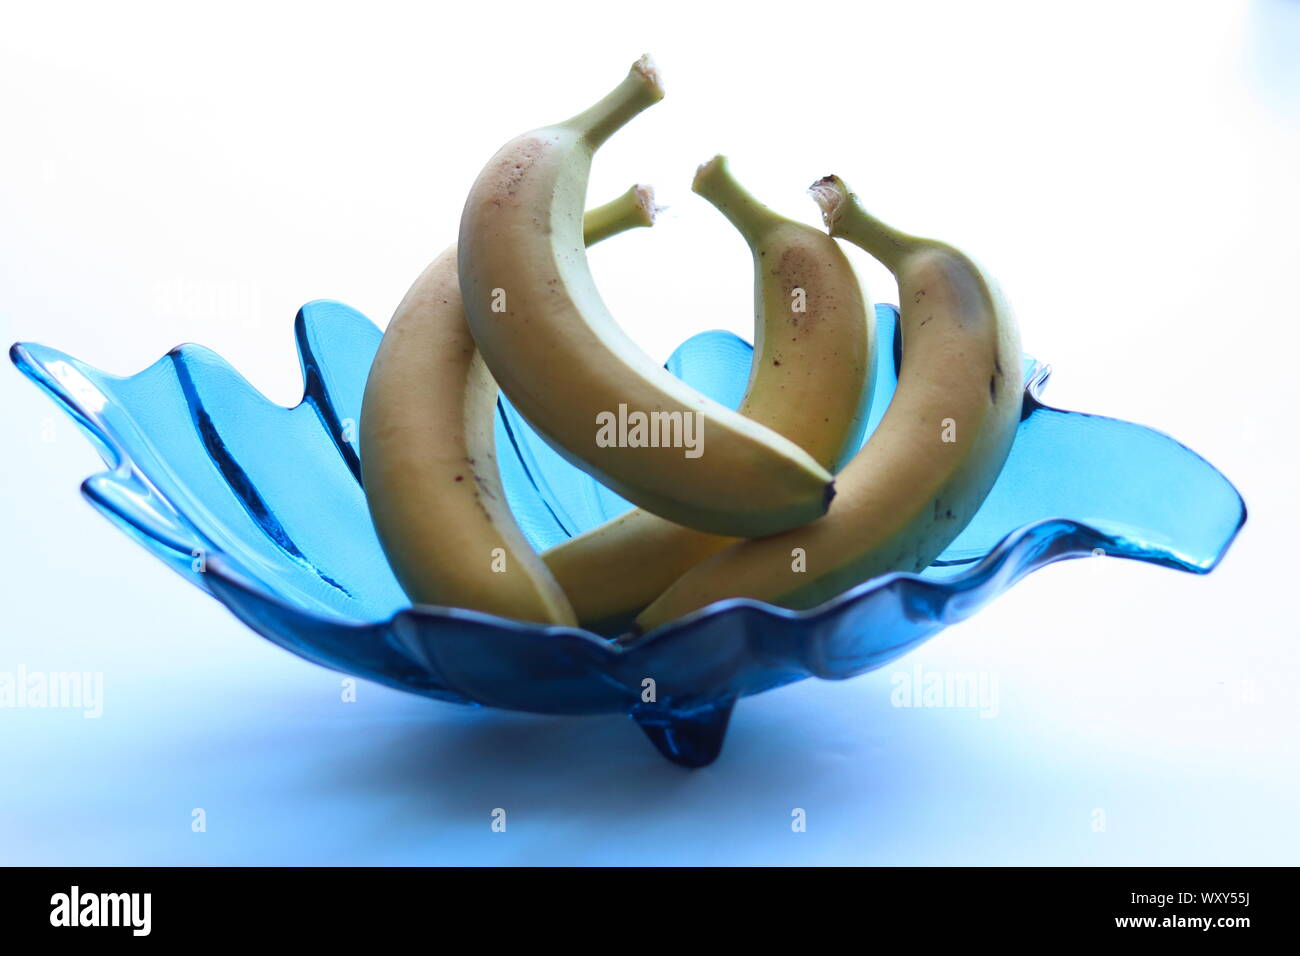 Seule la banane dans un bol en verre décoratif bleu turquoise contre fond blanc Banque D'Images